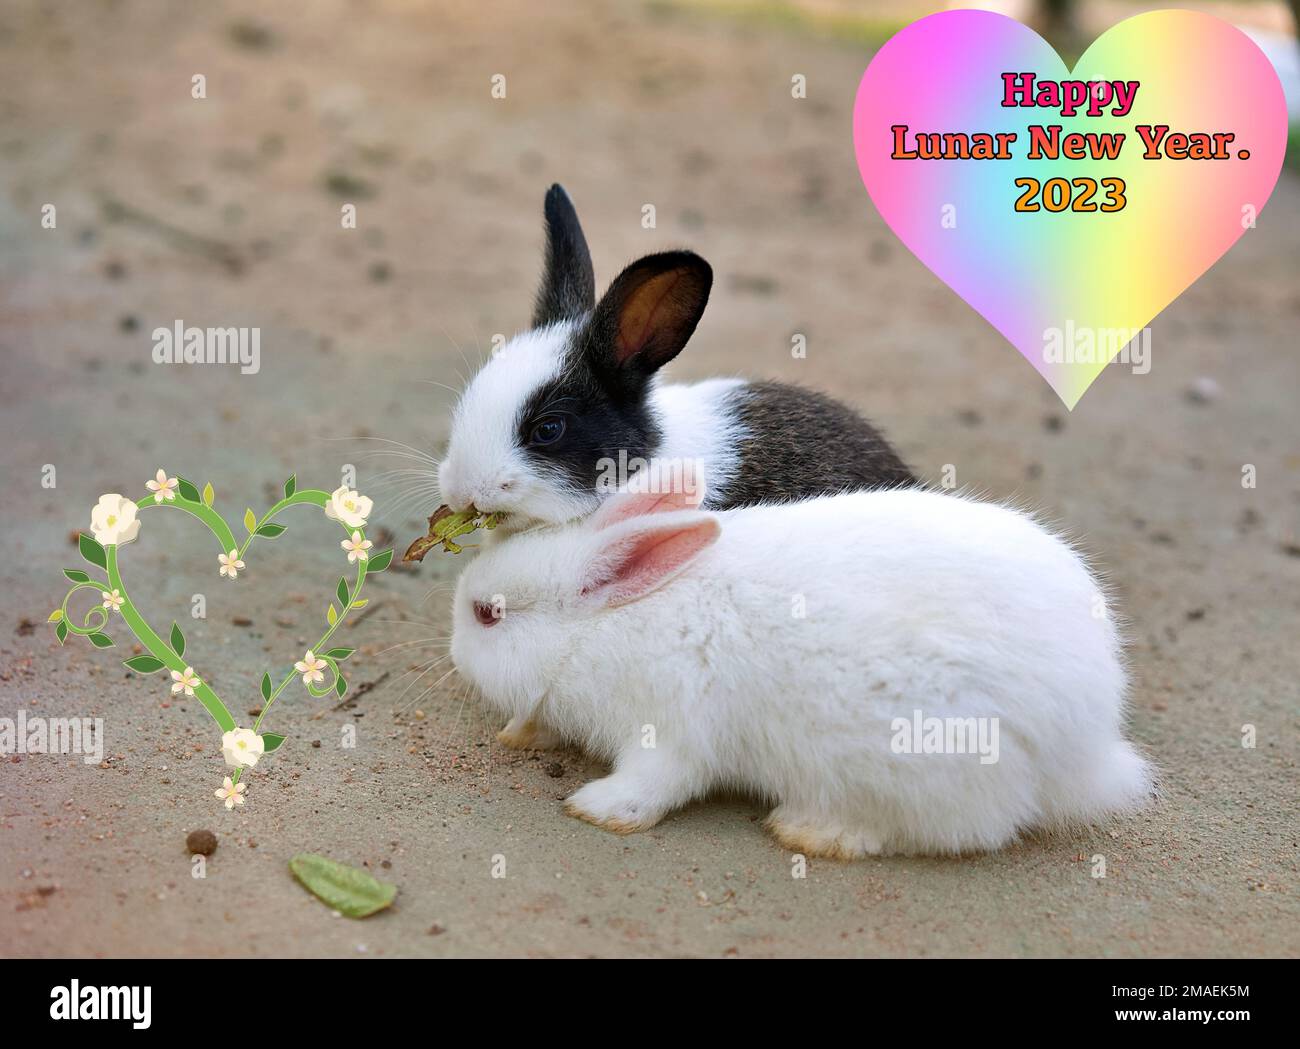 Zwei niedliche Hasen teilen sich eine Mahlzeit, mit der Begrüßung zum „Happy Lunar New Year“. Stockfoto